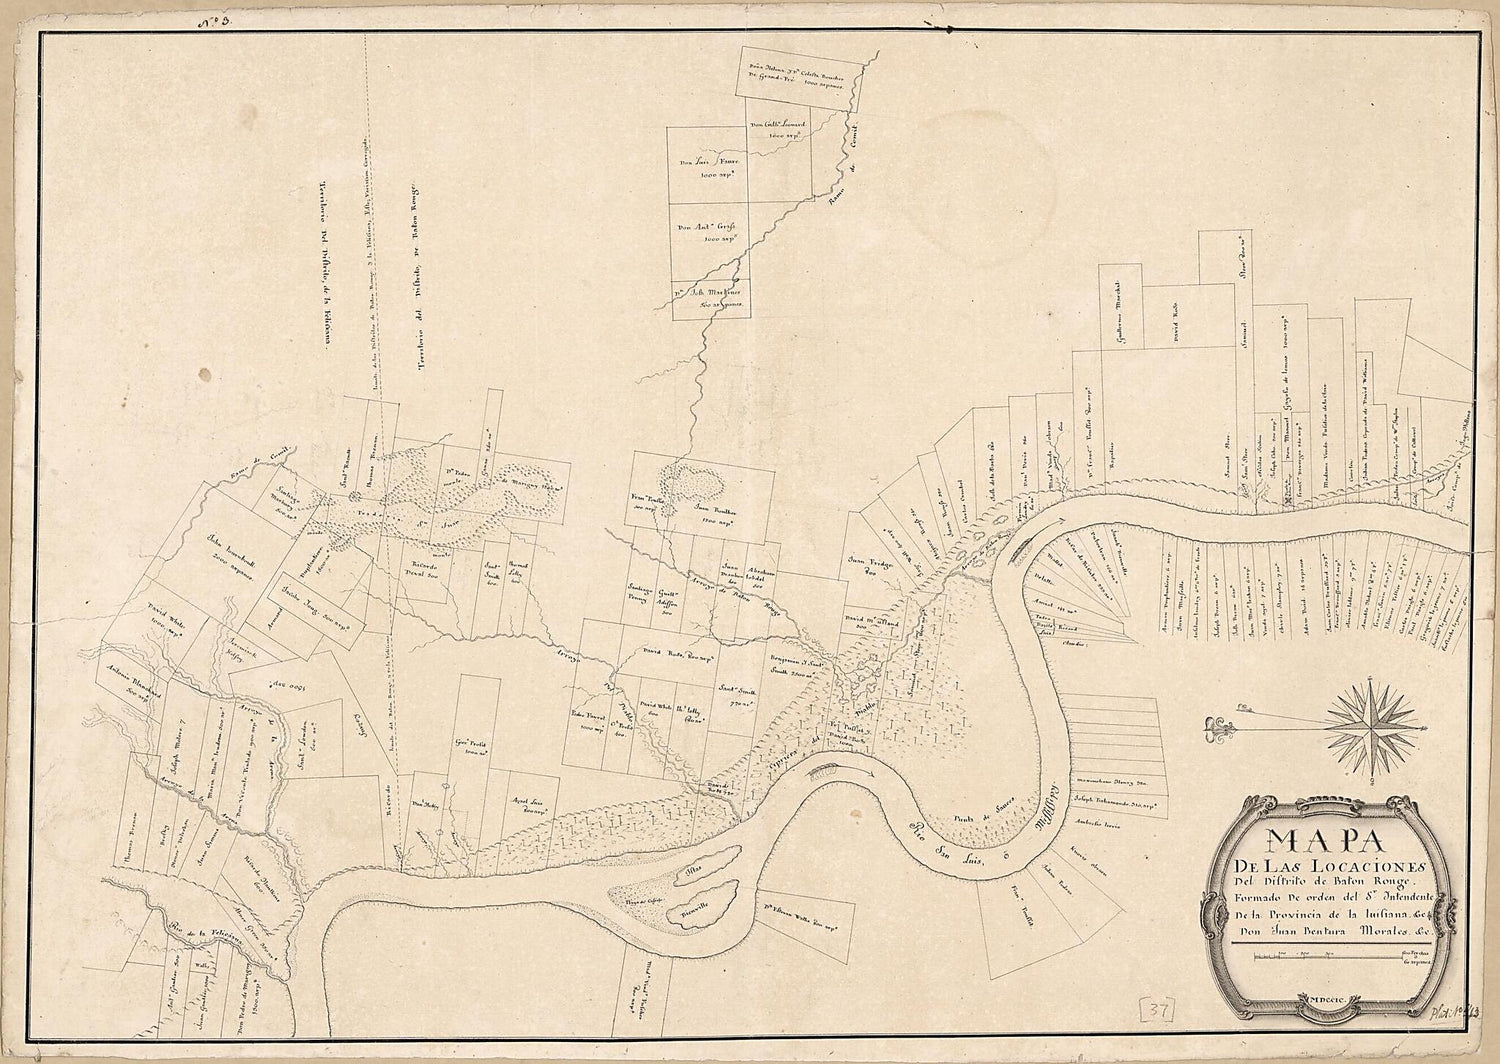 This old map of Mapa De Las Locaciones Del Distrito De Baton Rouge from 1799 was created by Juan Bentura Morales, Vicente Sebastián Pintado in 1799